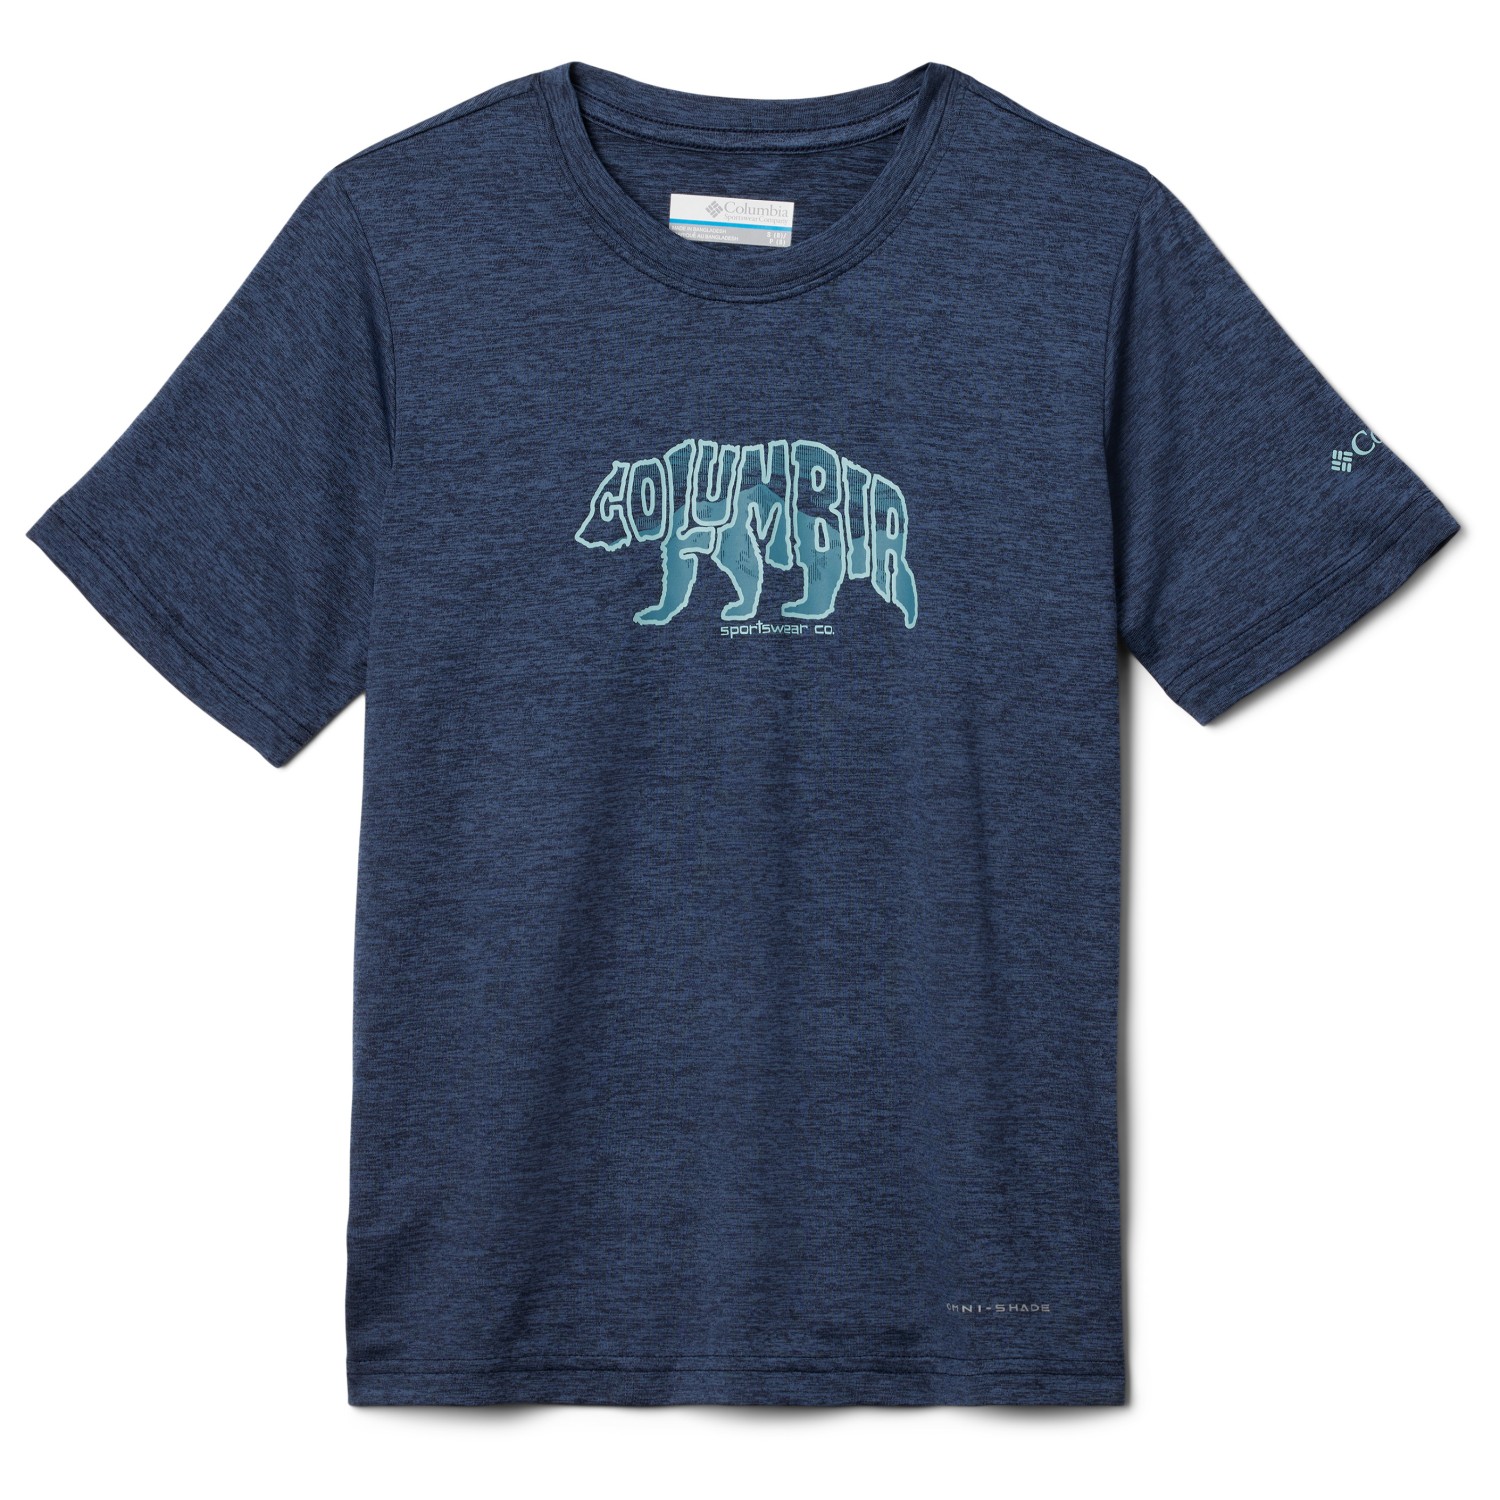 Функциональная рубашка Columbia Kid's Mount Echo Graphic Shirt S/S, цвет Collegiate Navy/Bearly Stroll брюки columbia columbia trek joggers цвет collegiate navy white